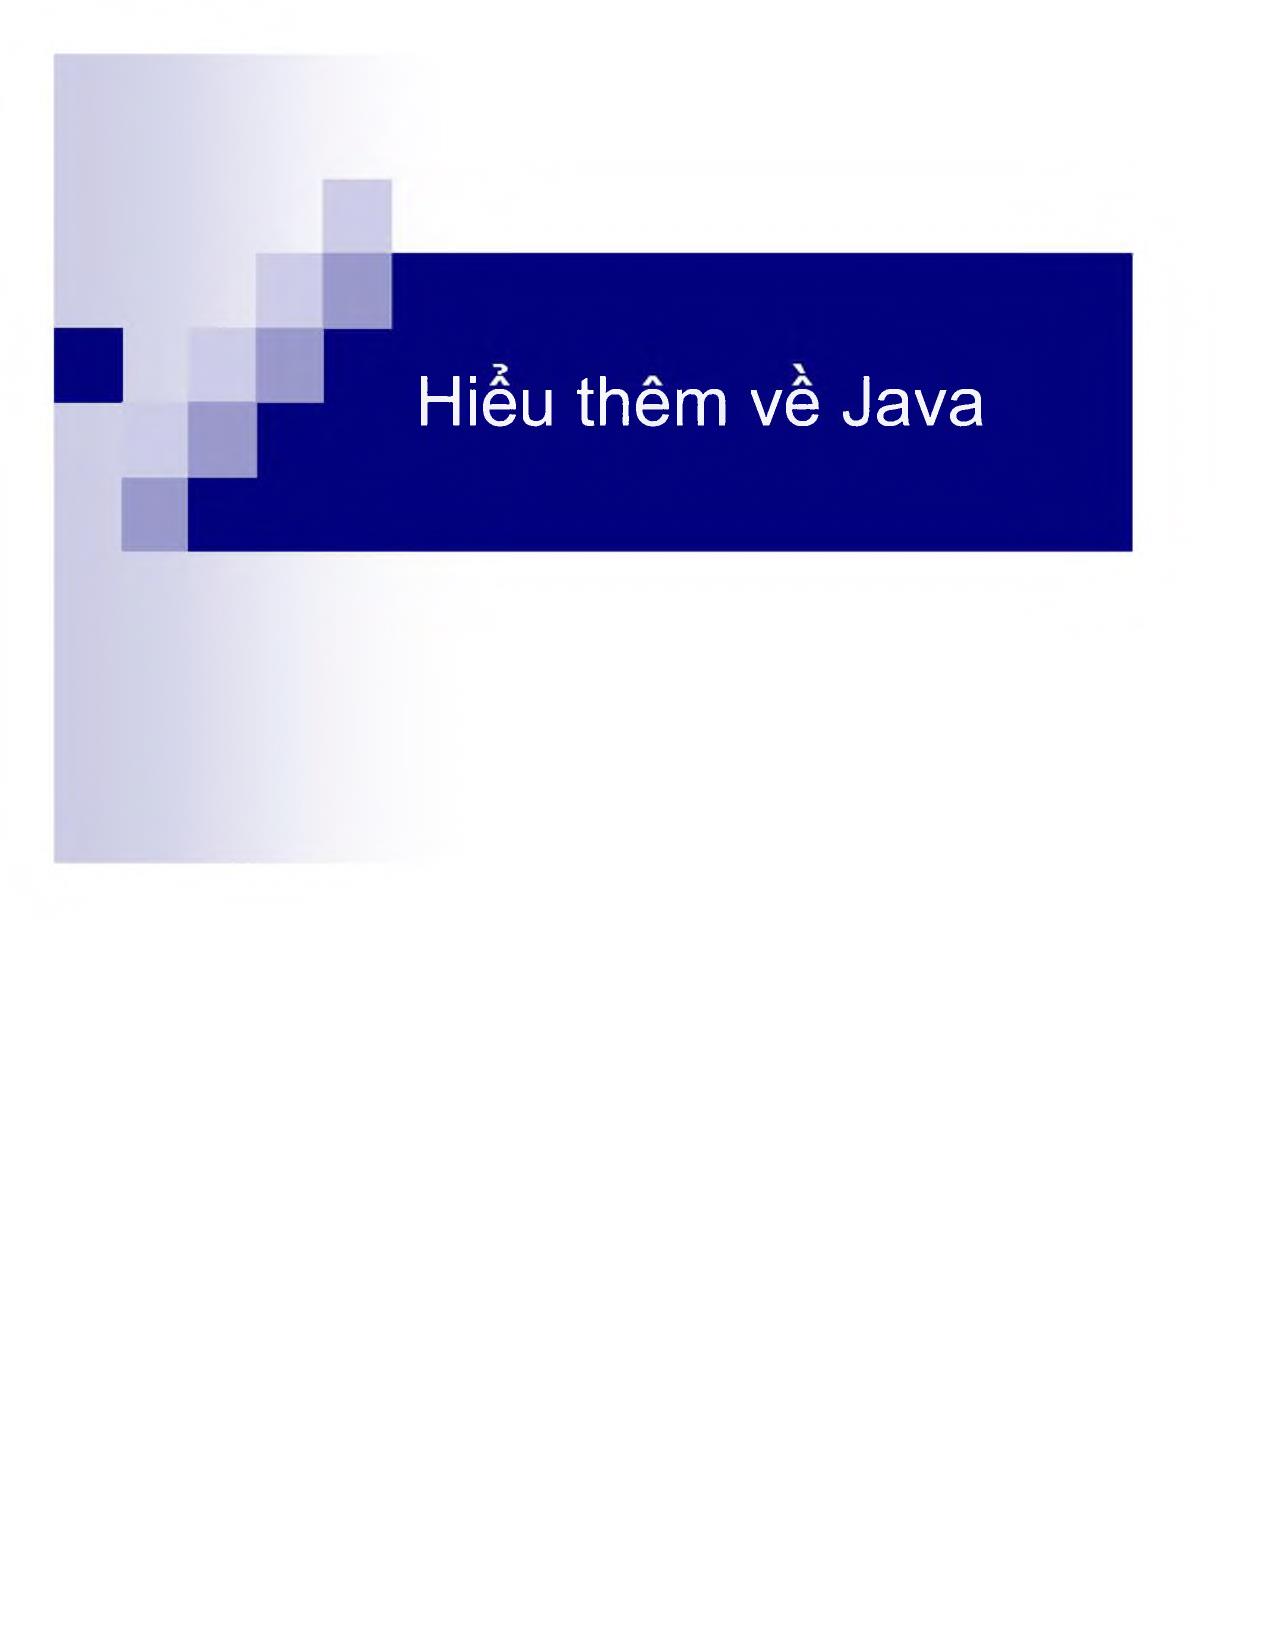 Hiểu thêm về Java trang 1